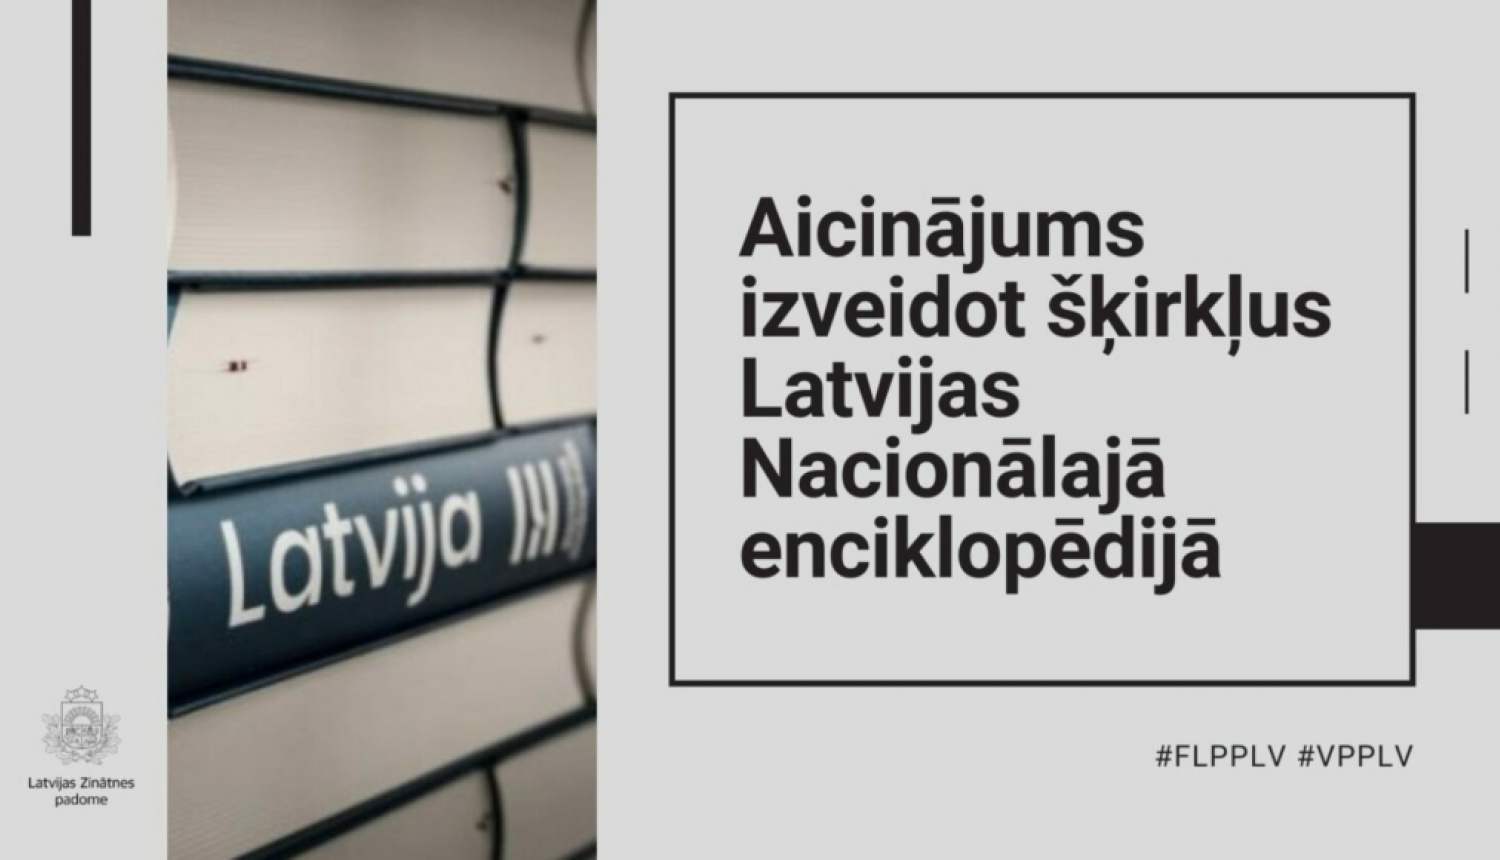 Aicinājums izveidot šķirkļus Latvijas Nacionālajā enciklopēdijā